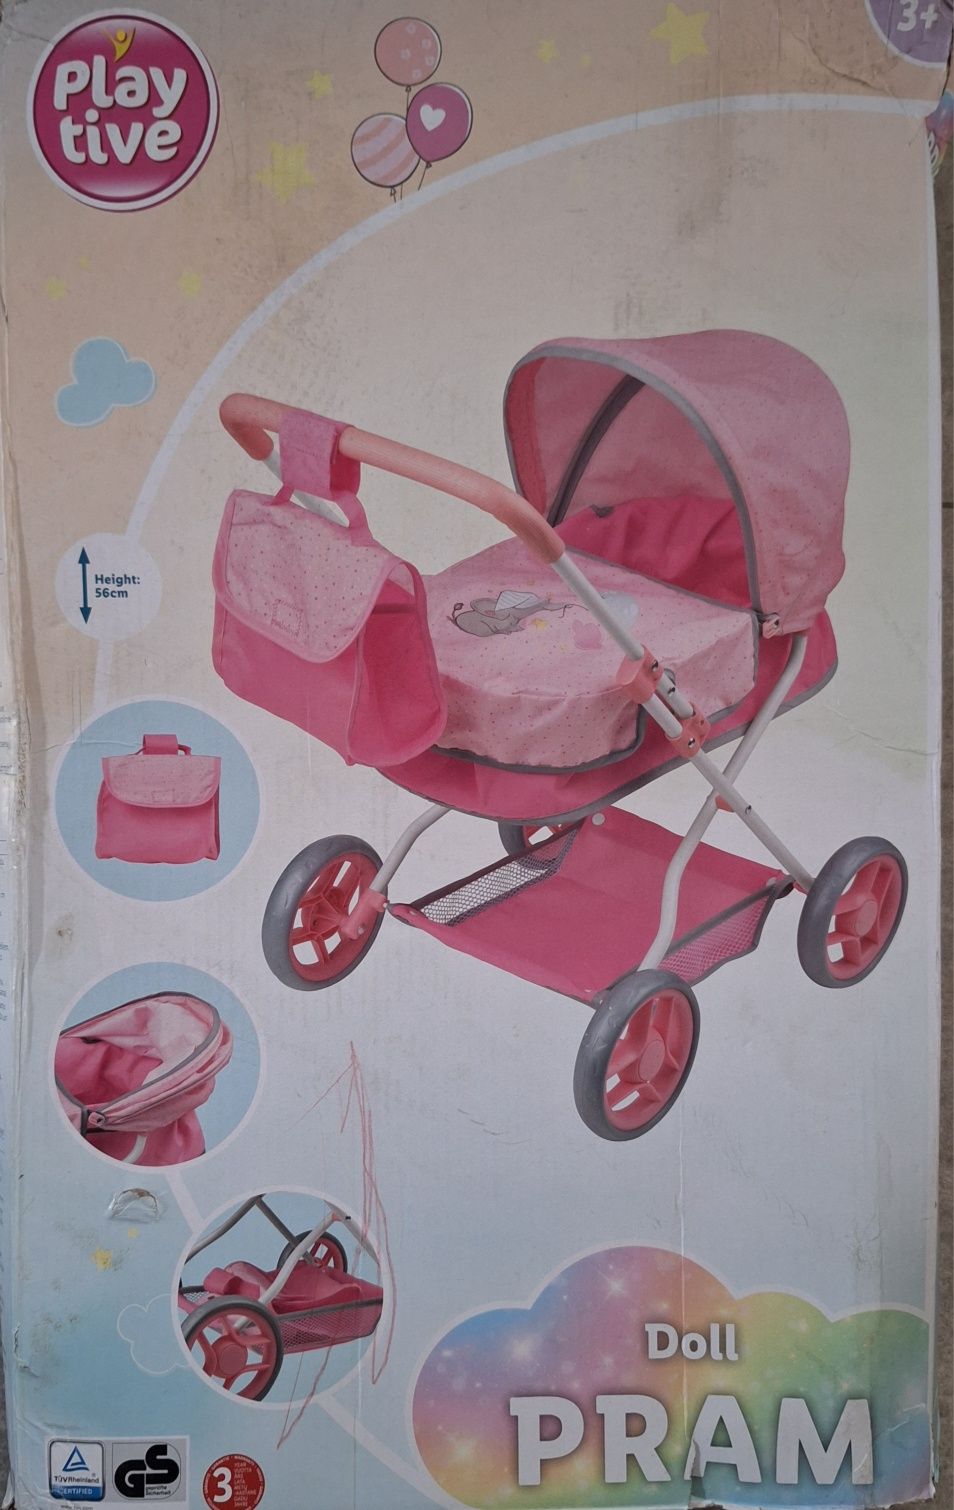 Wózek gondola dla lalek Play tive